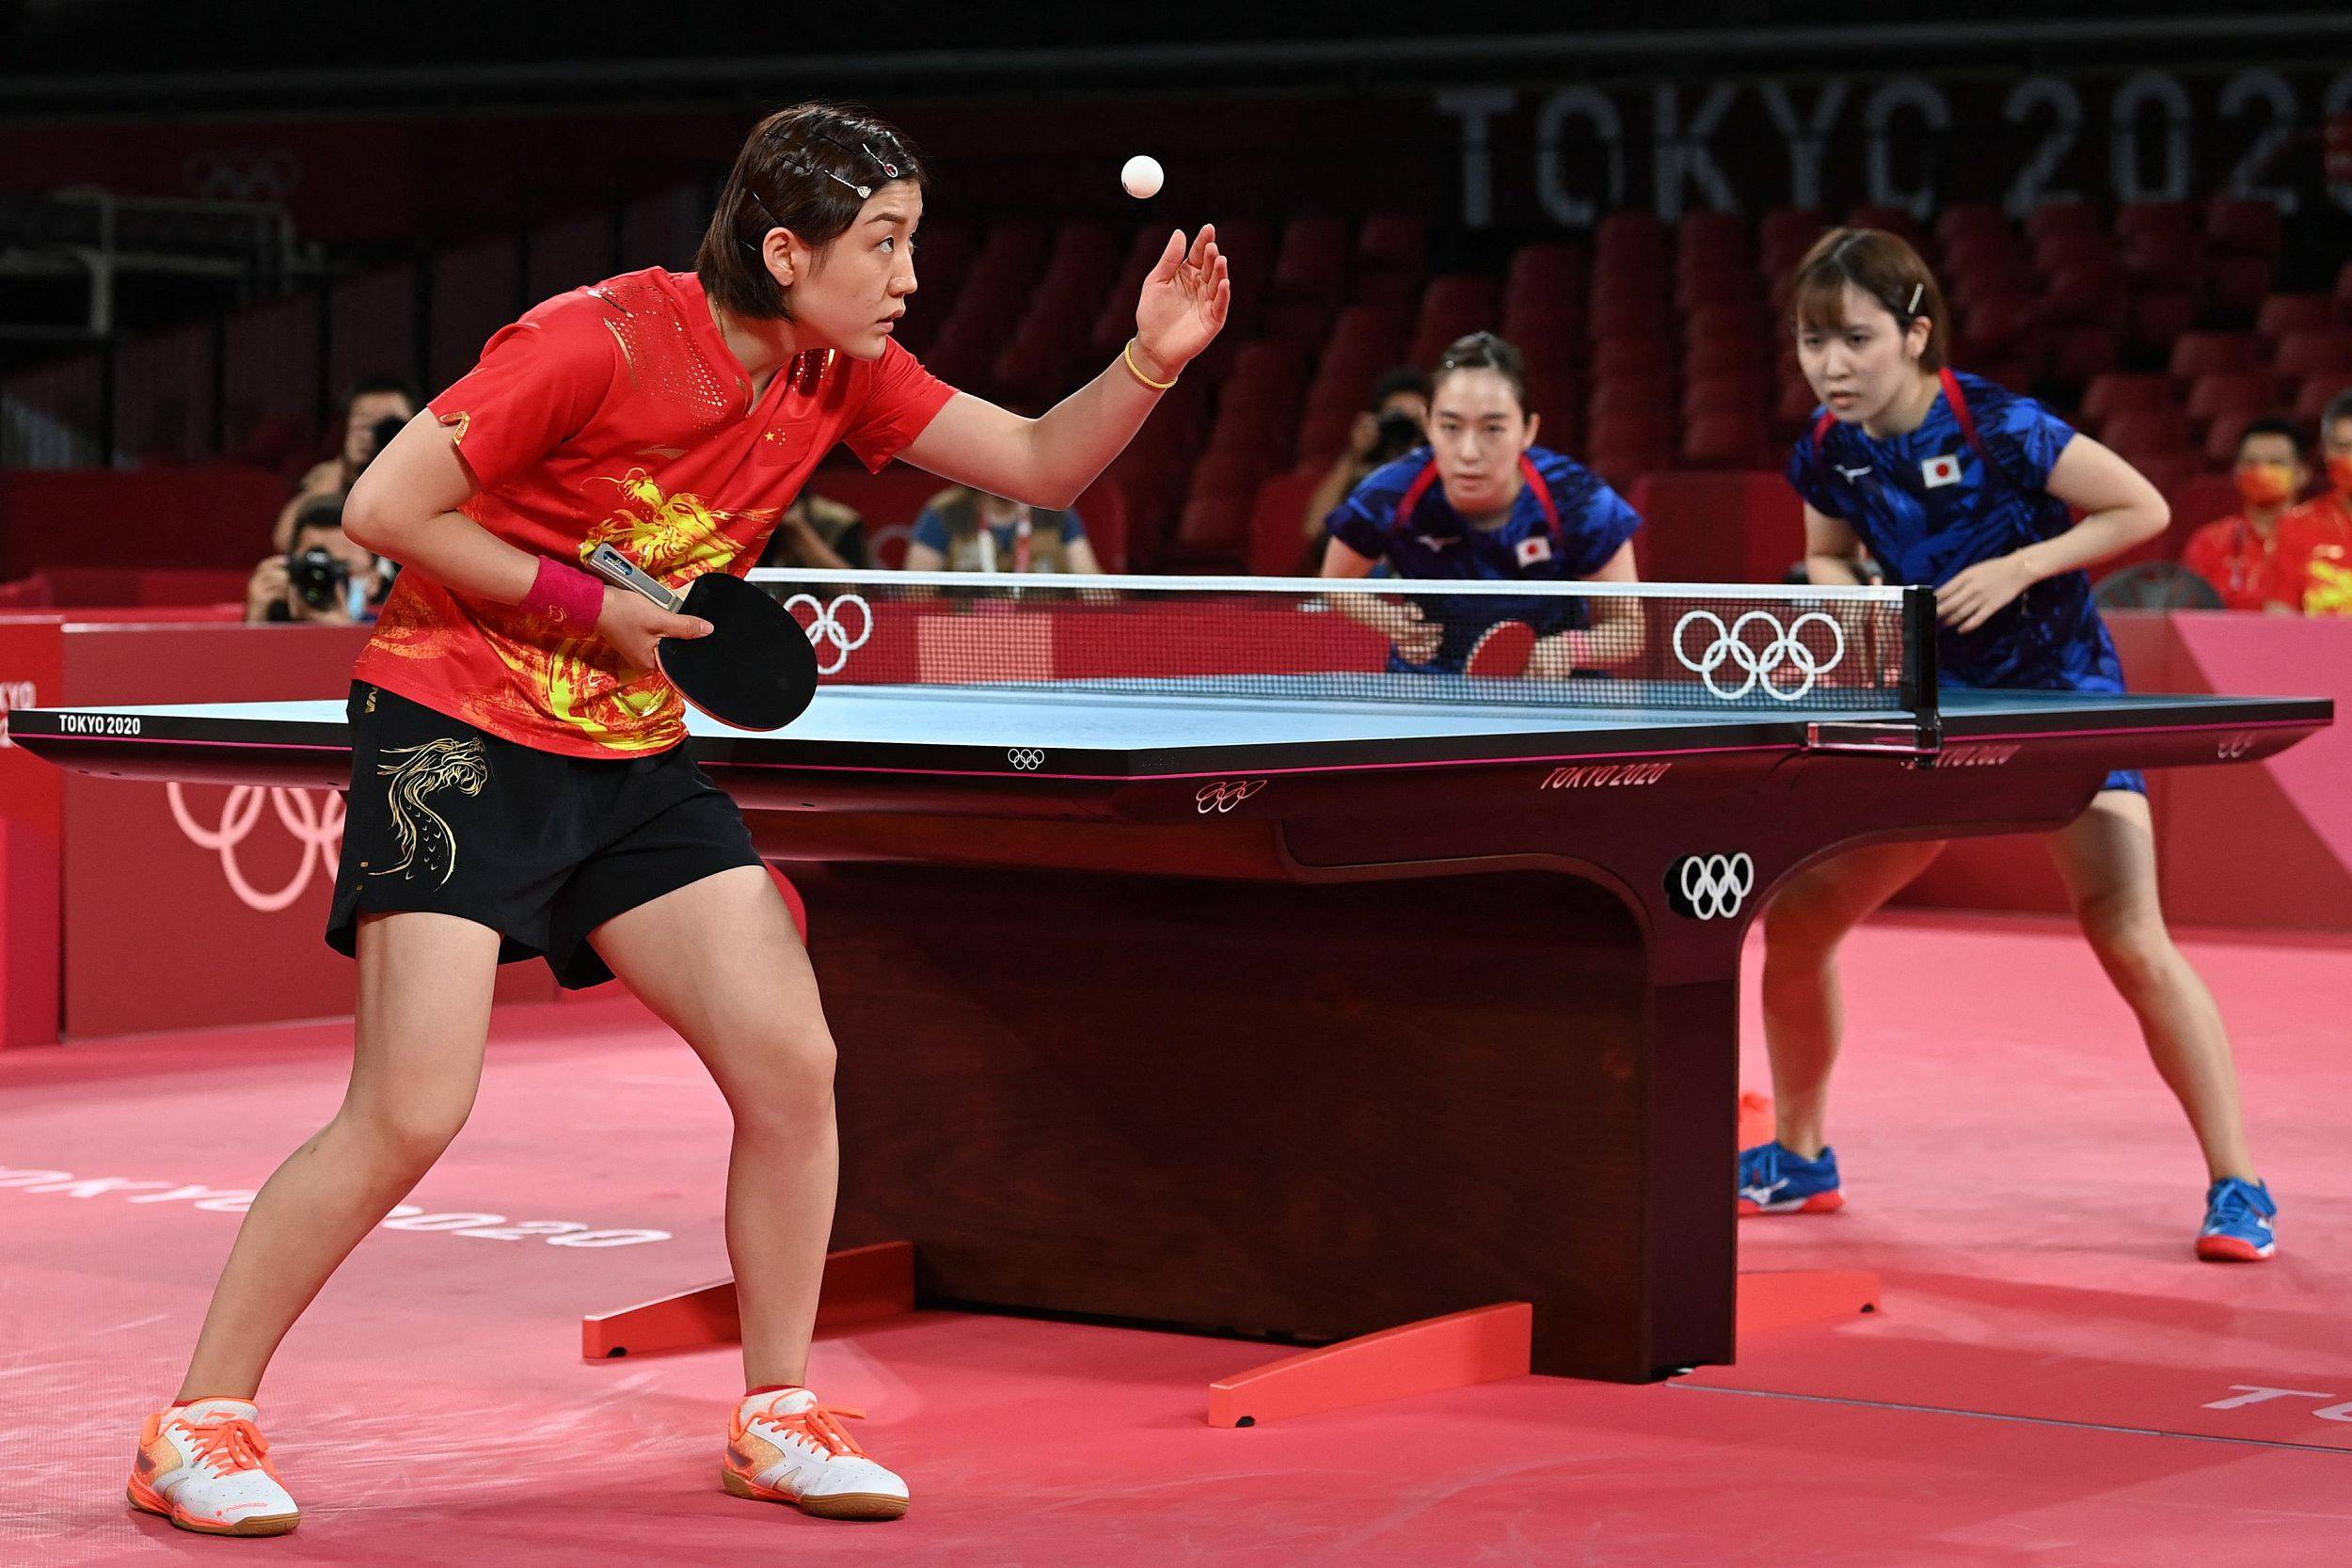 东京奥运会乒乓球女子团体决赛进行中,中国队对阵日本